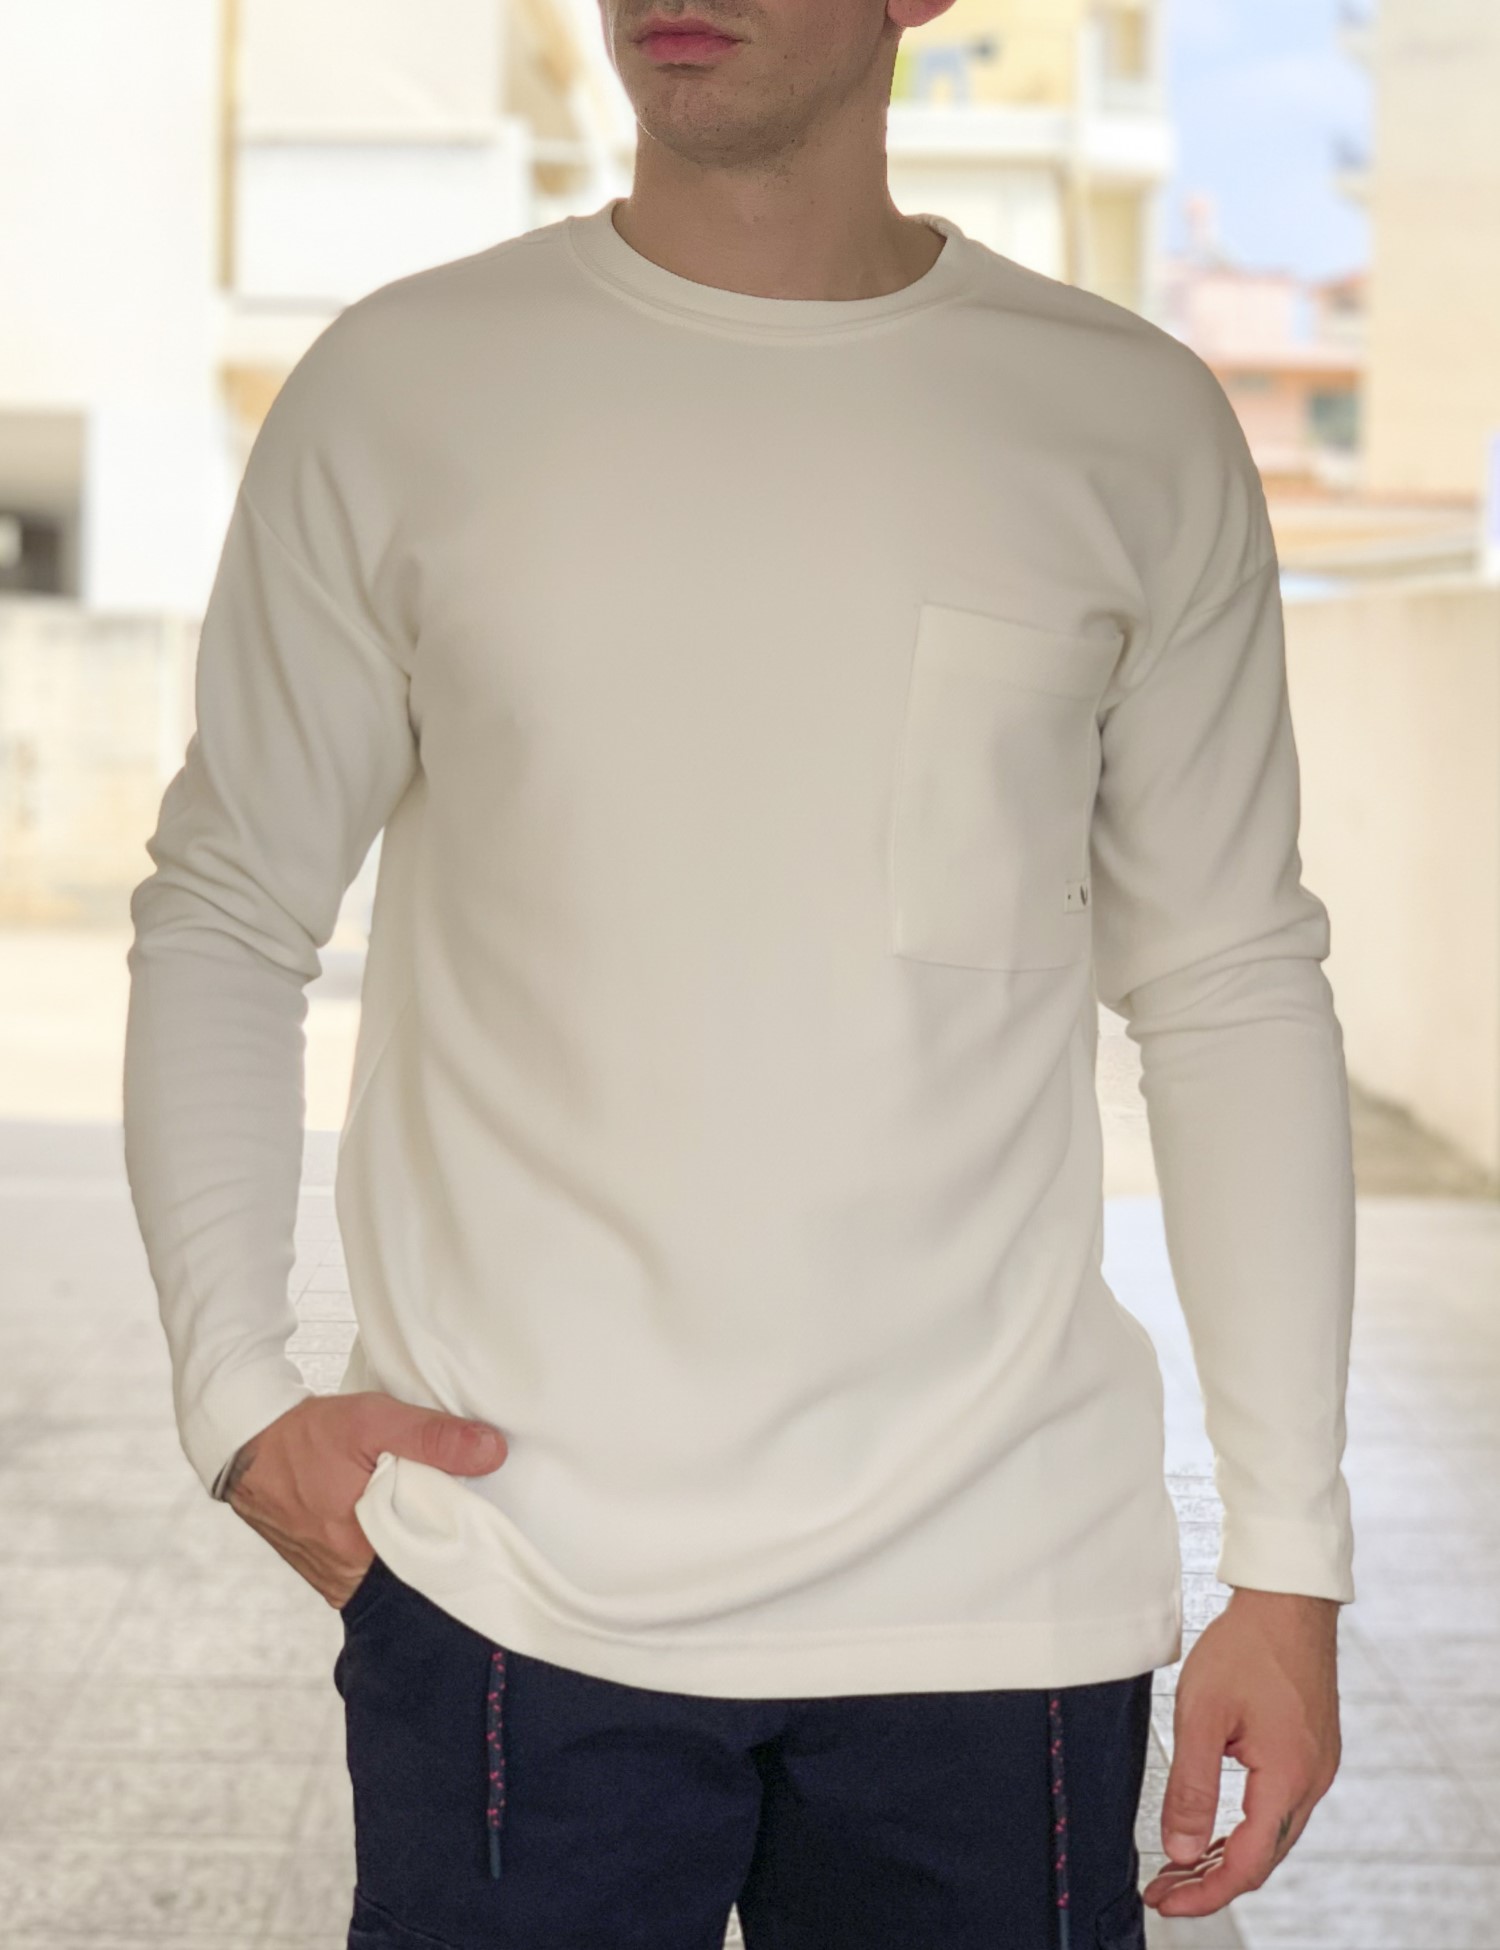 – Ανδρικη λευκη μακρυμανικη μπλουζα με αναγλυφο υφασμα 1136W